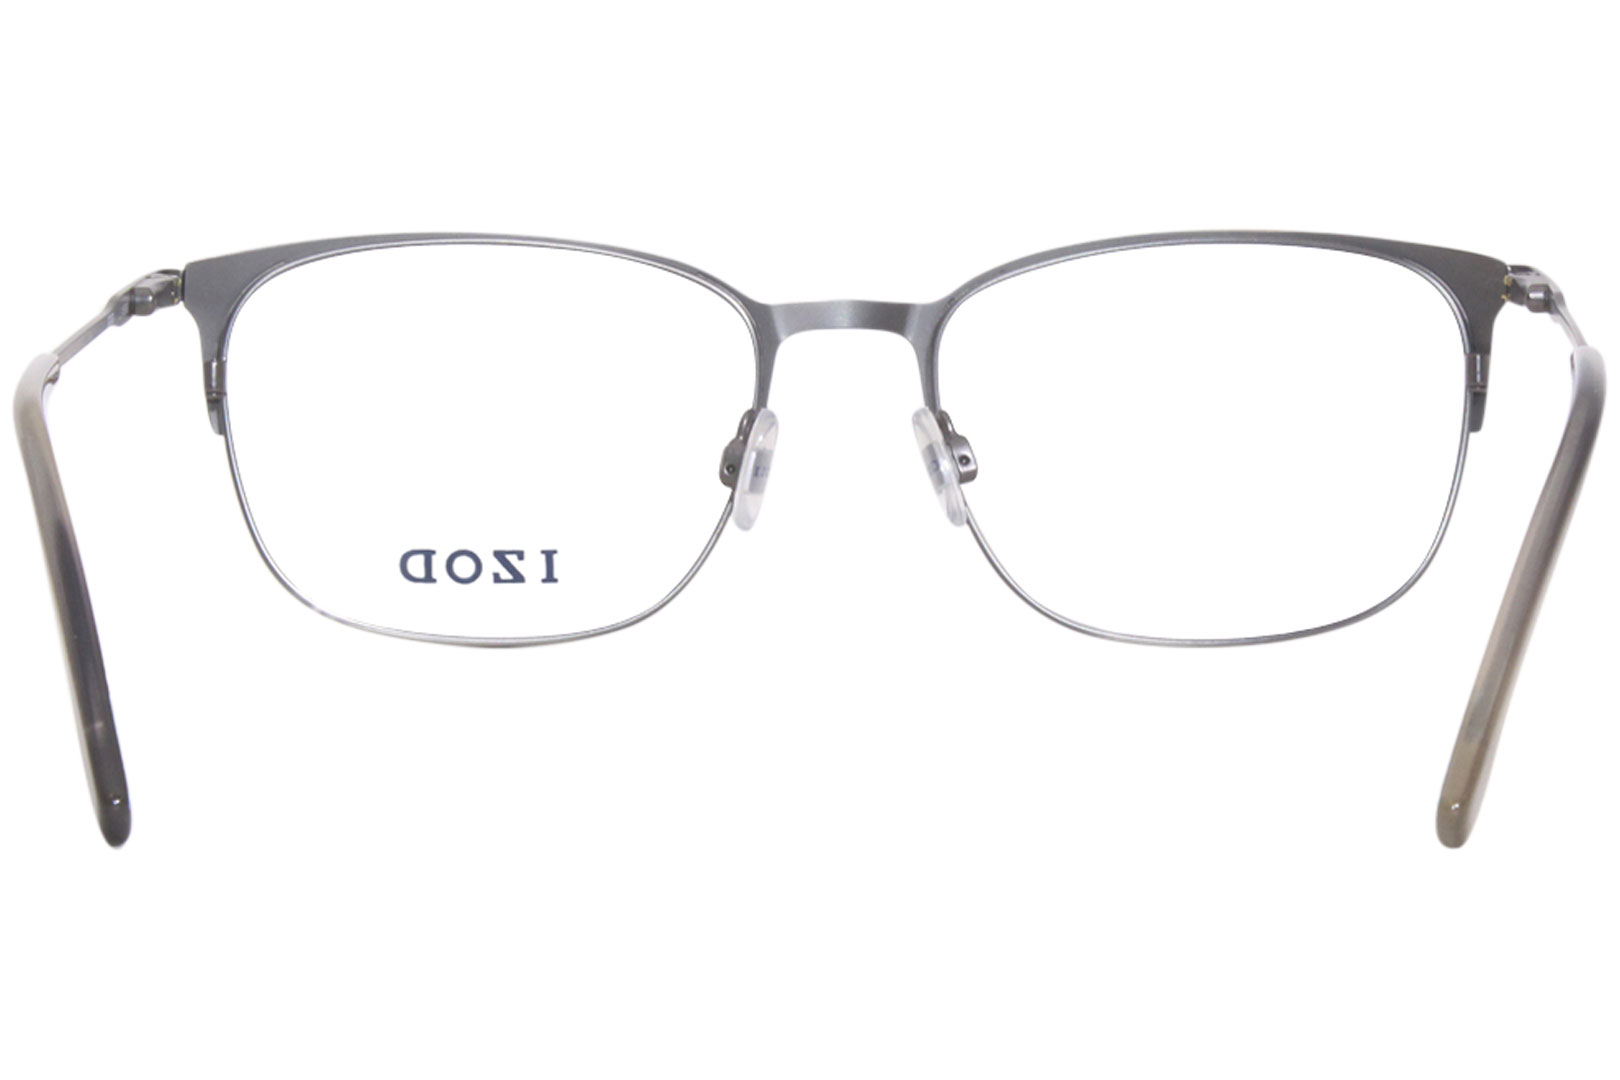 Izod 2088 Eyeglasses Men's Pewter Matte Full Rim Rectangle Shape 54-18 ...